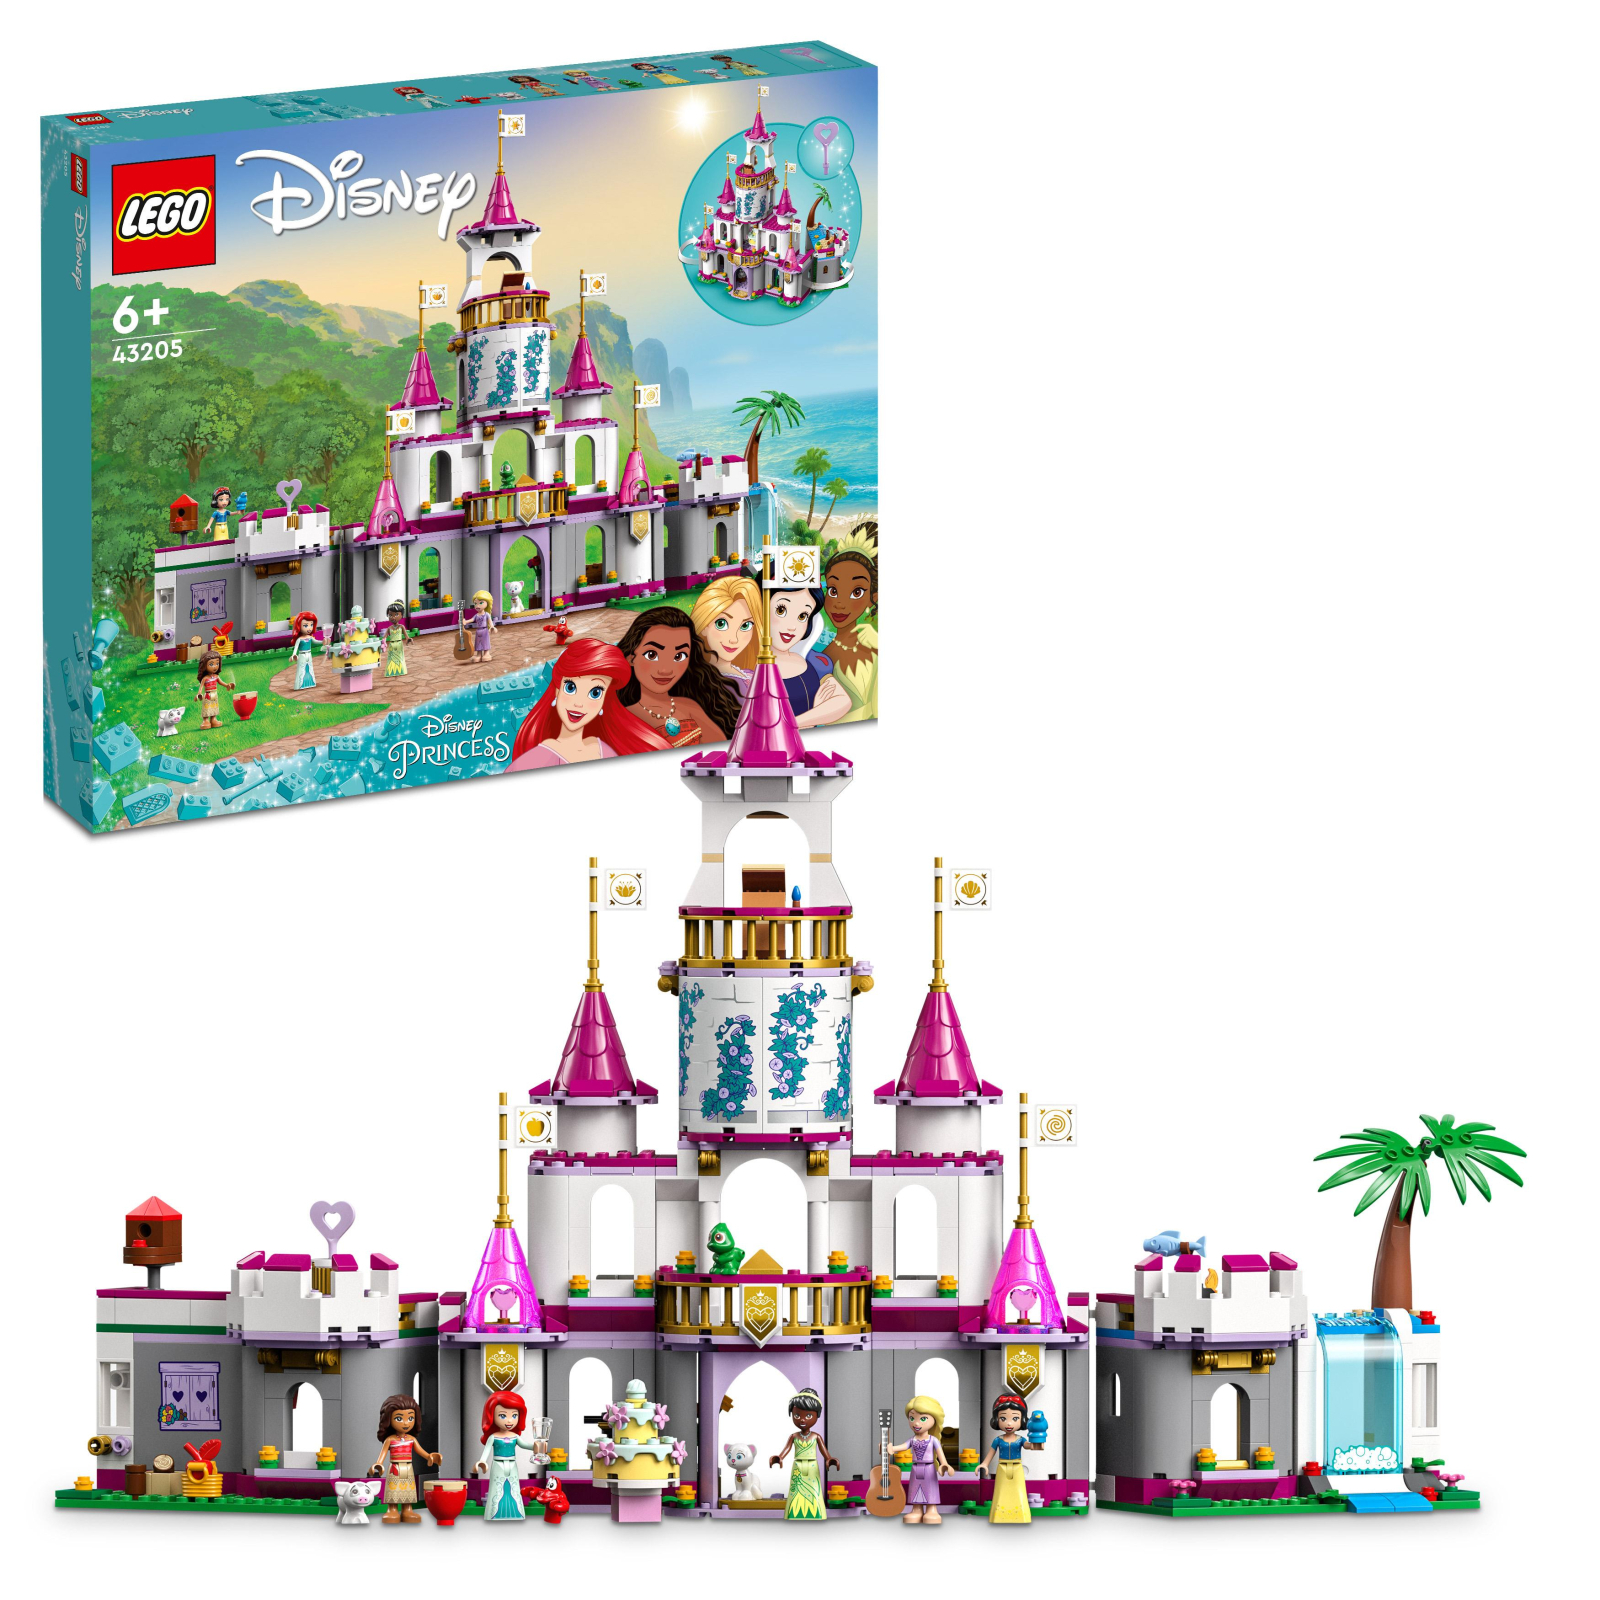 Конструктор LEGO Disney Princess Замок невероятных приключений 698 деталей (43205) изображение 2